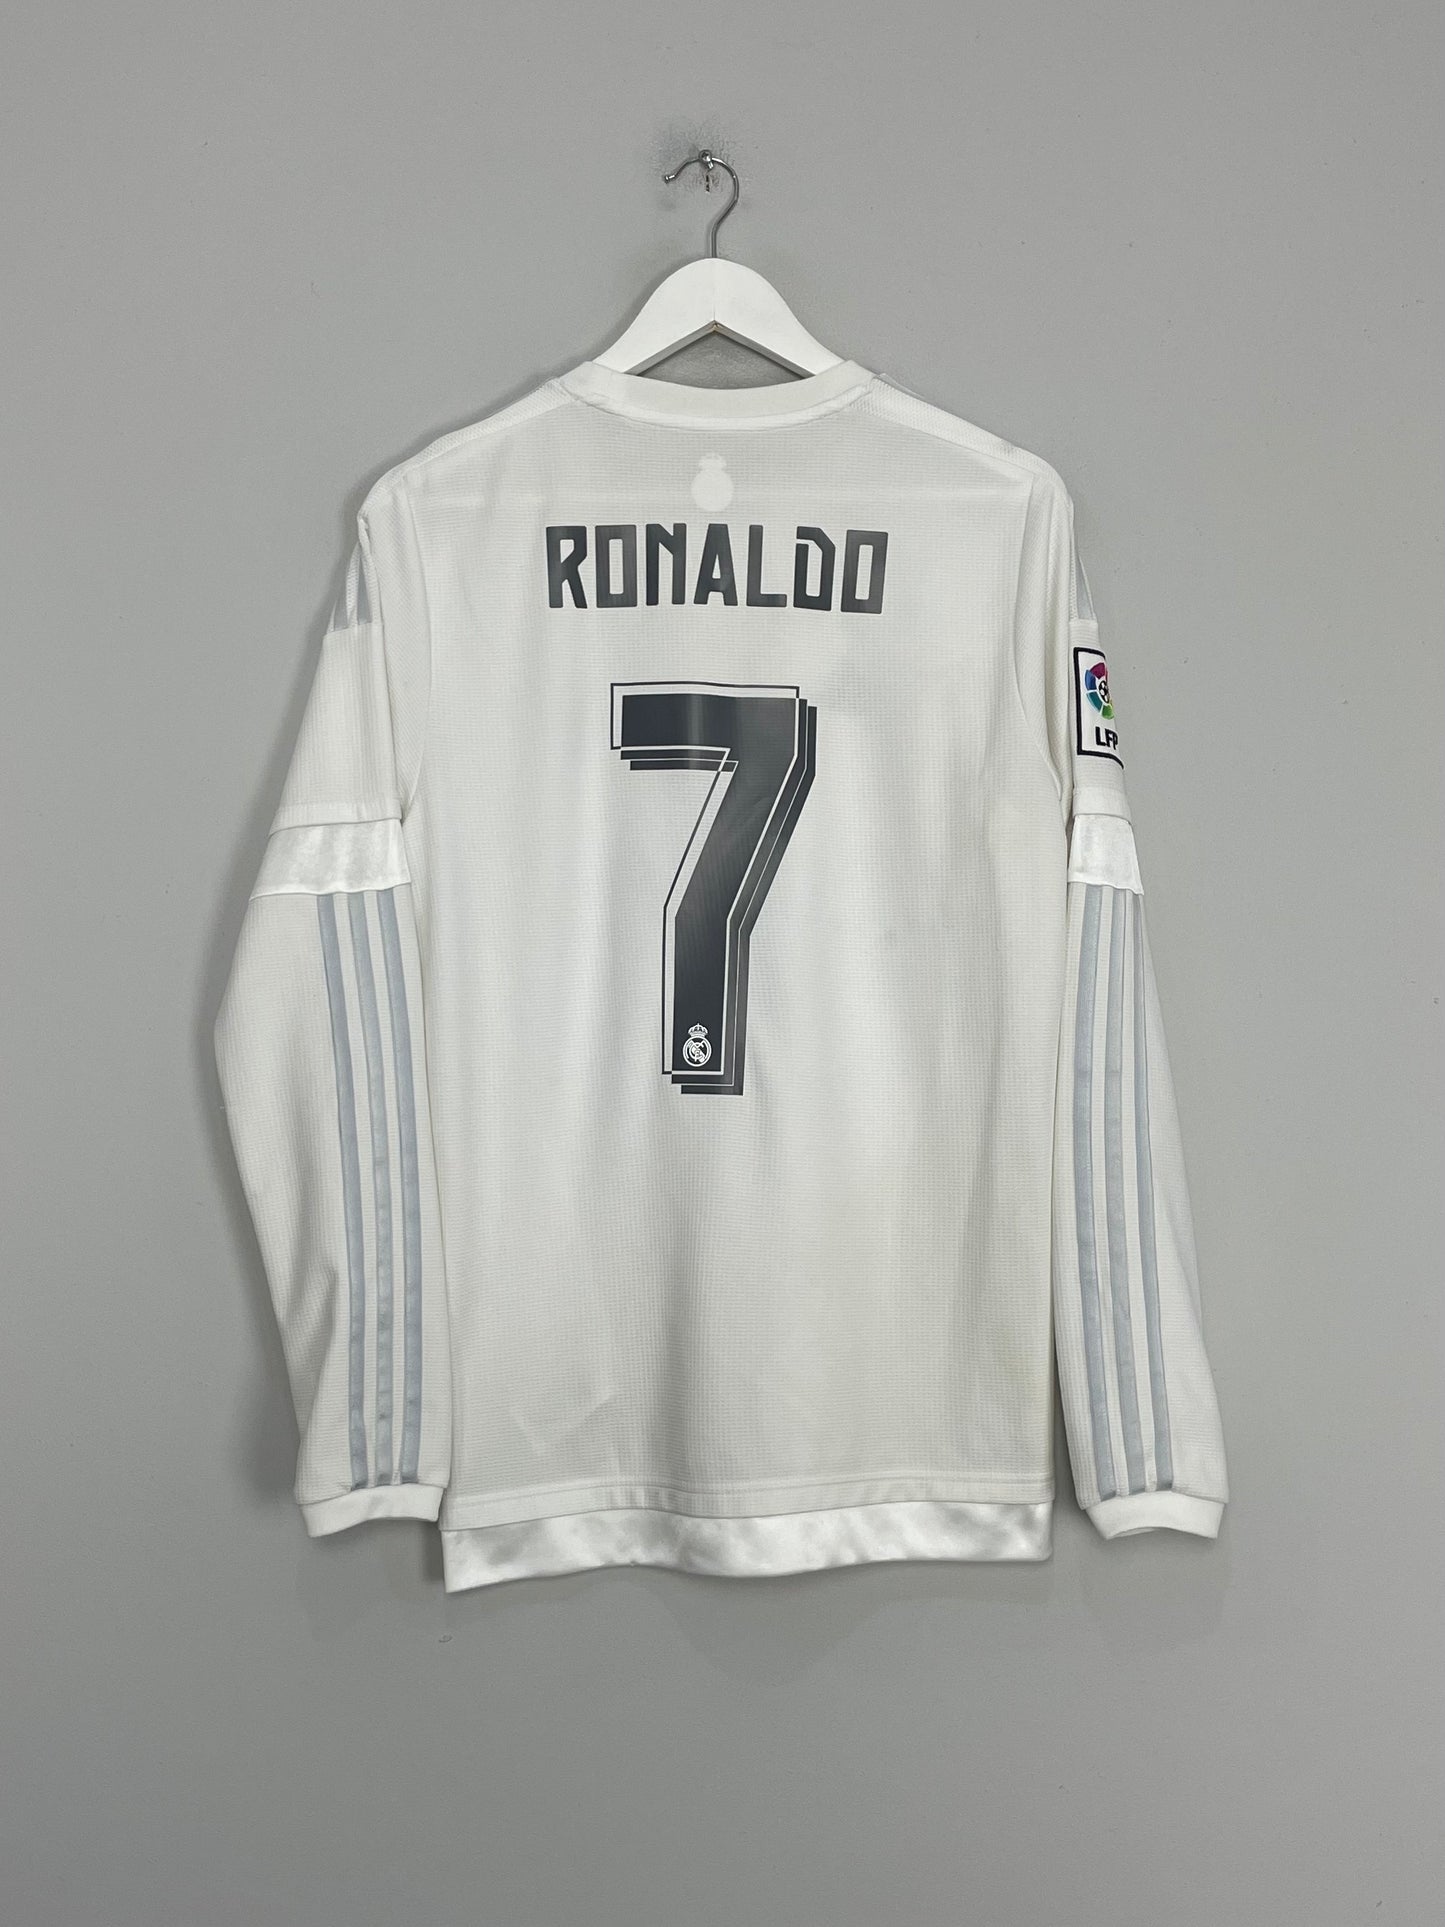 2015/16 REAL MADRID RONALDO #7 L/S HOME SHIRT (M) ADIDAS